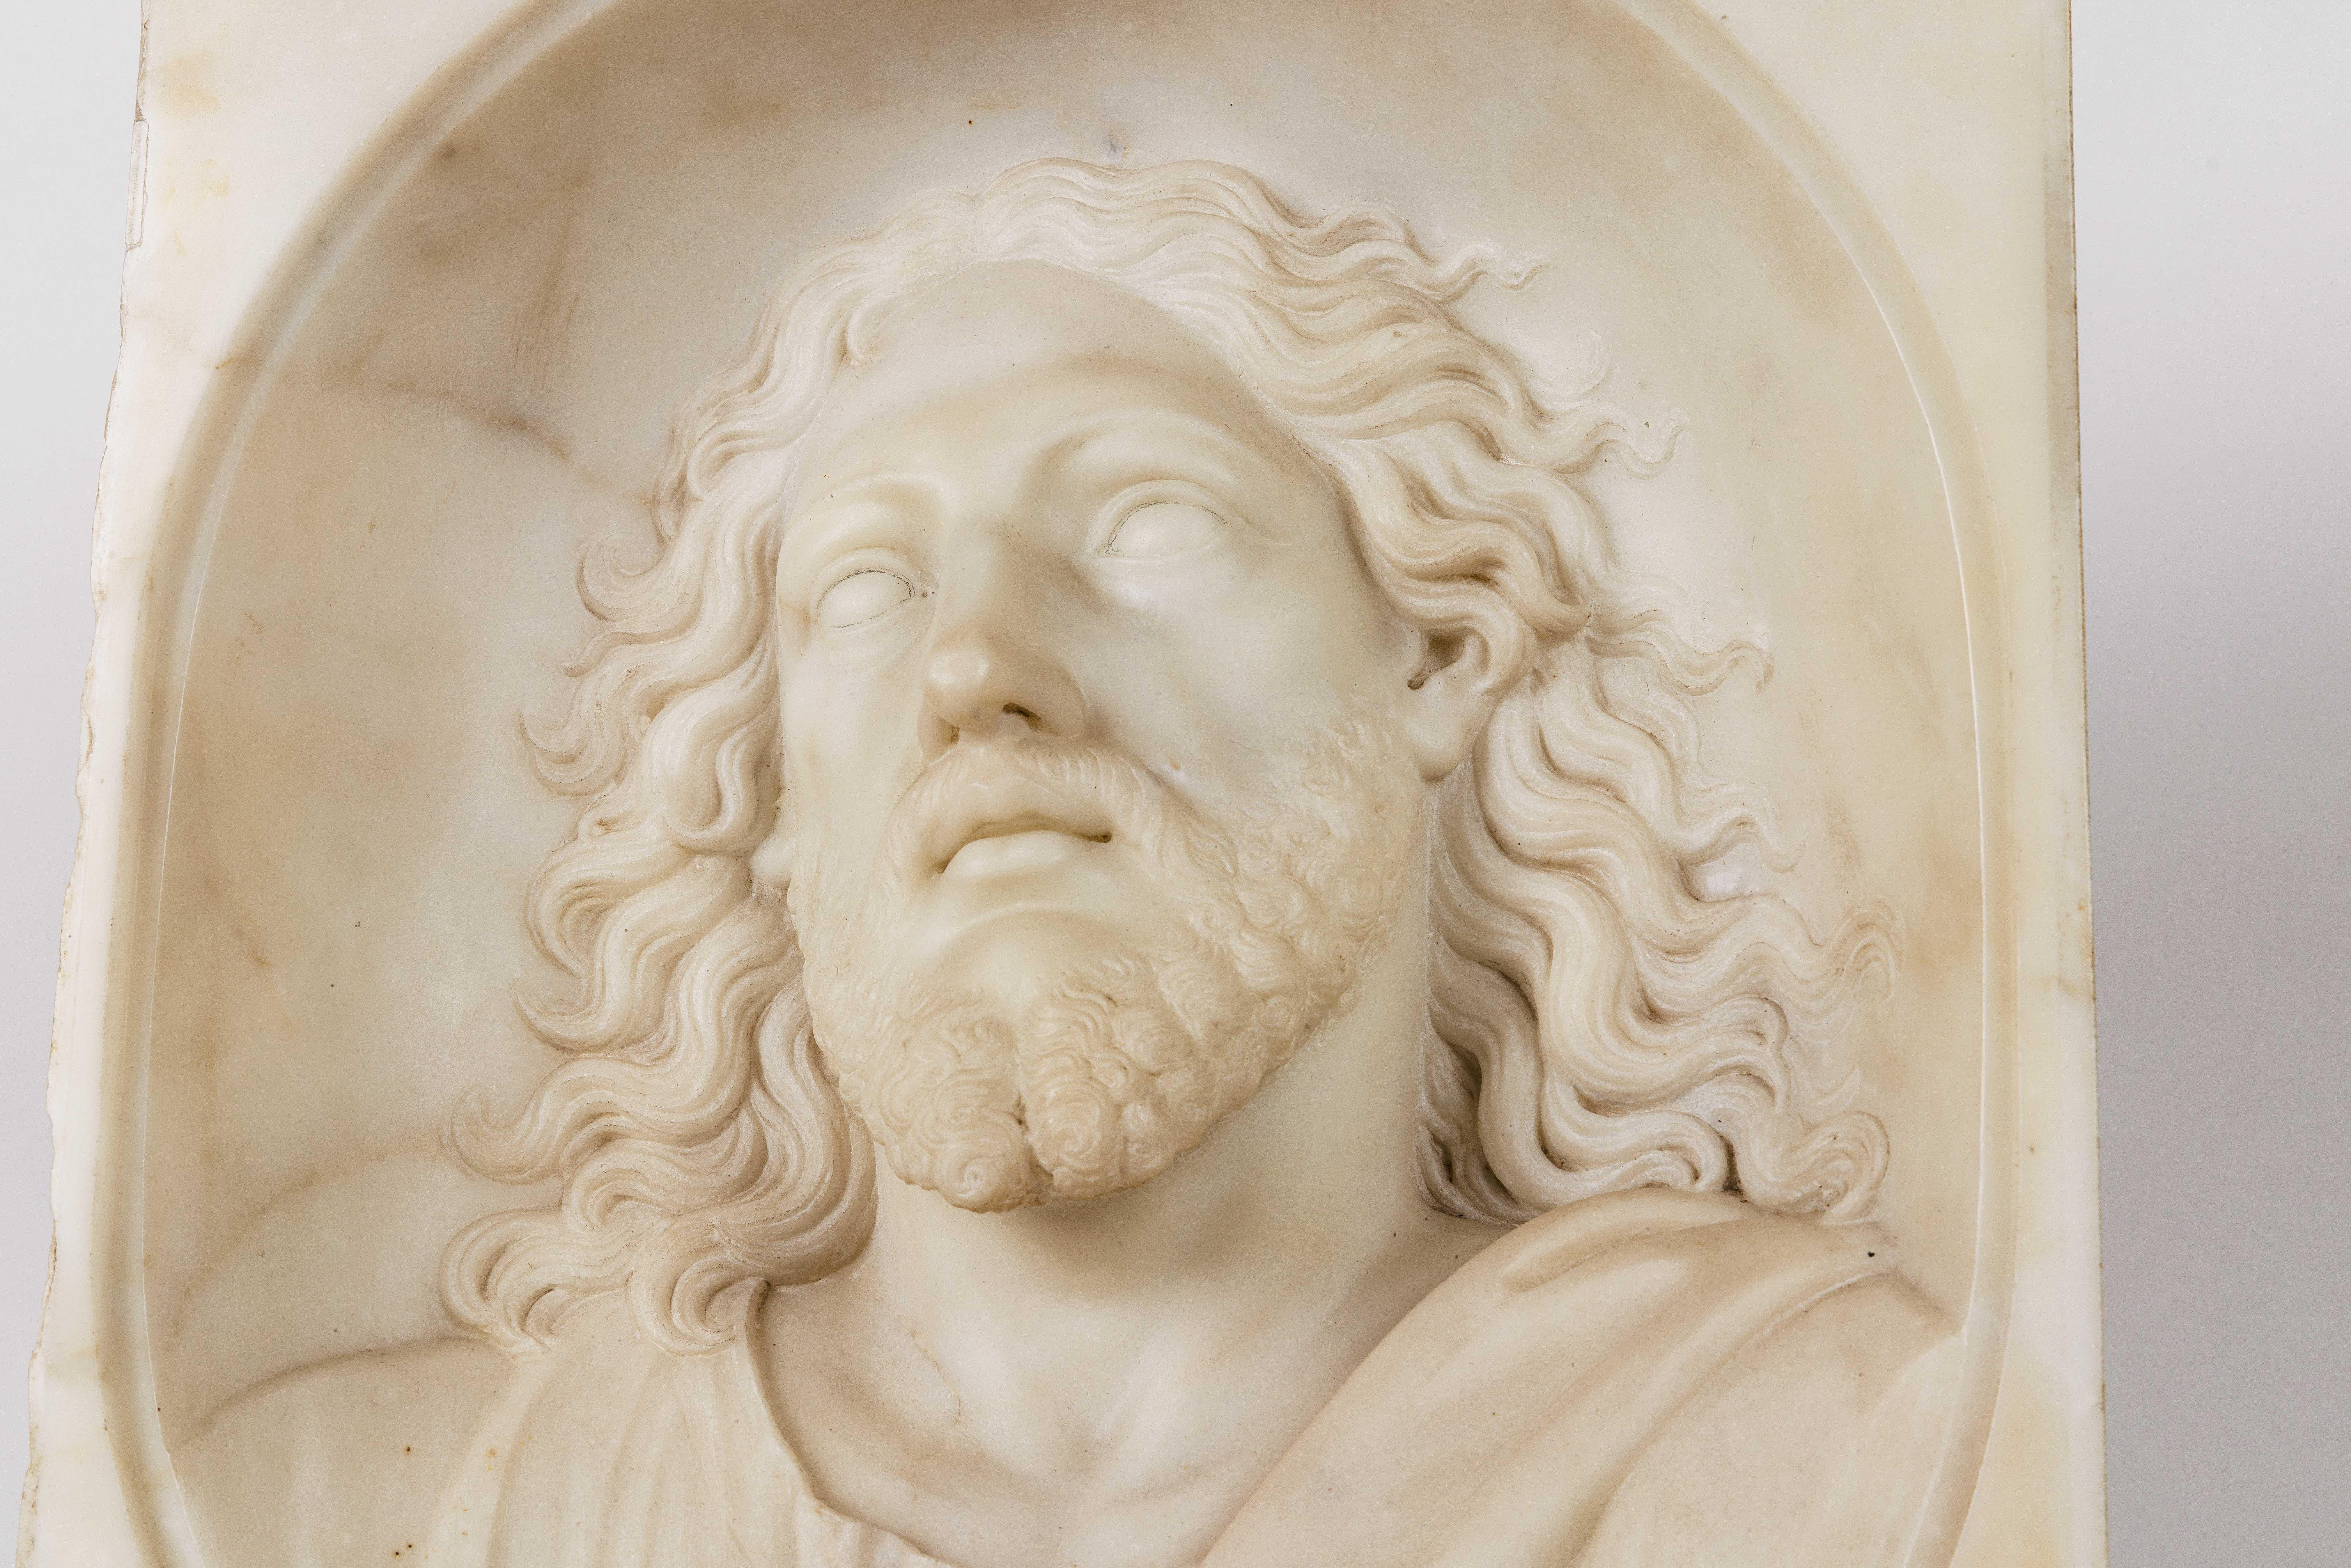 Seltene und bedeutende italienische Büste aus weißem Marmor von Jesus Christus, um 1850

Ein wirklich außergewöhnlich geschnitztes Marmorrelief des Heiligen Jesus Christus. Sehr kraftvoll und dramatisch - eine museumswürdige Skulptur. 

Unsigniert,